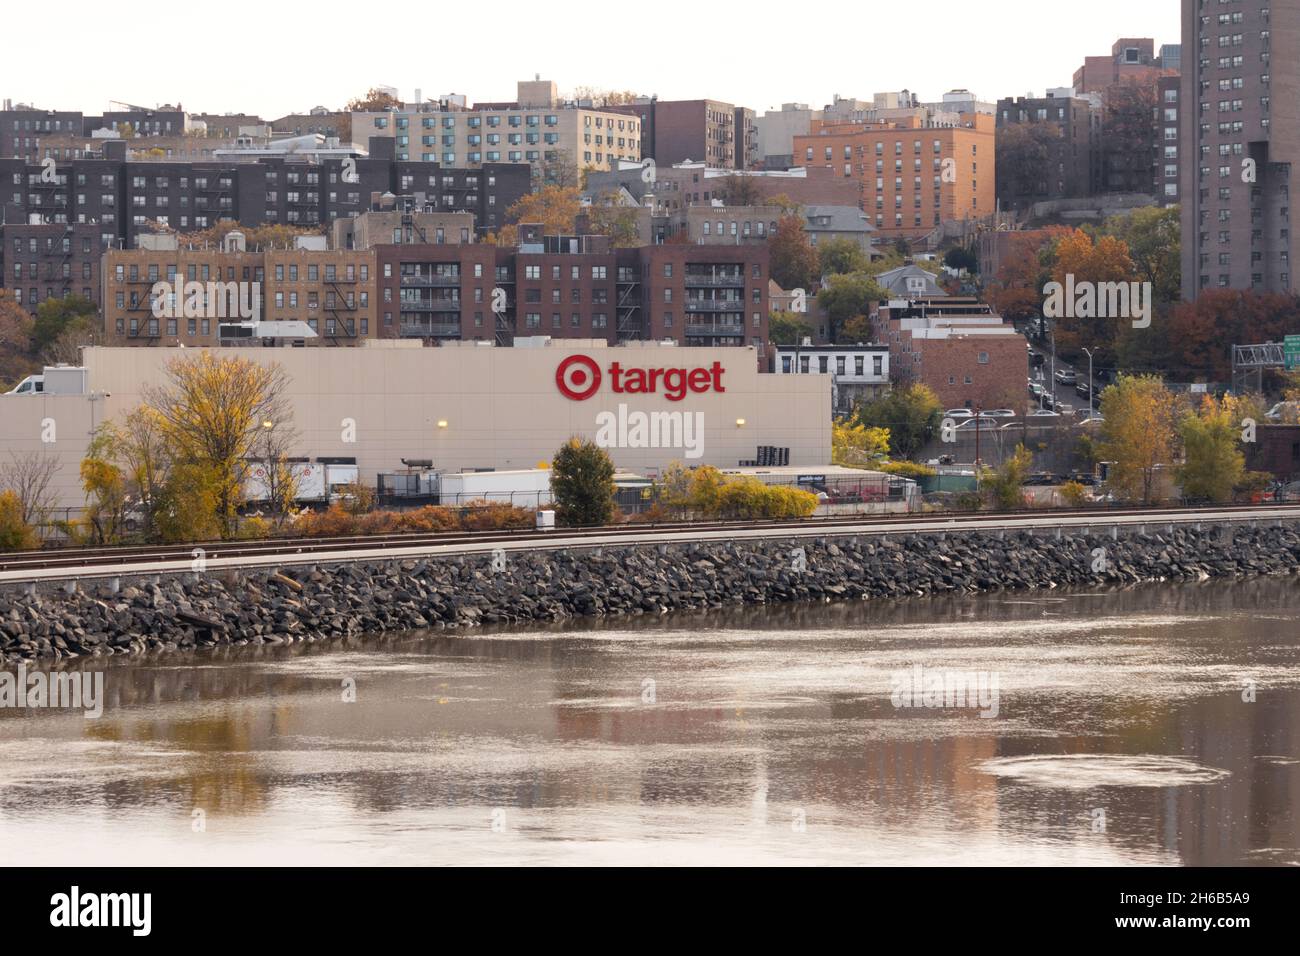 Un magasin de détail Target situé dans le Bronx vu de l'autre côté de la rivière Harlem, l'une des plus grandes sociétés de détail d'Amérique Banque D'Images